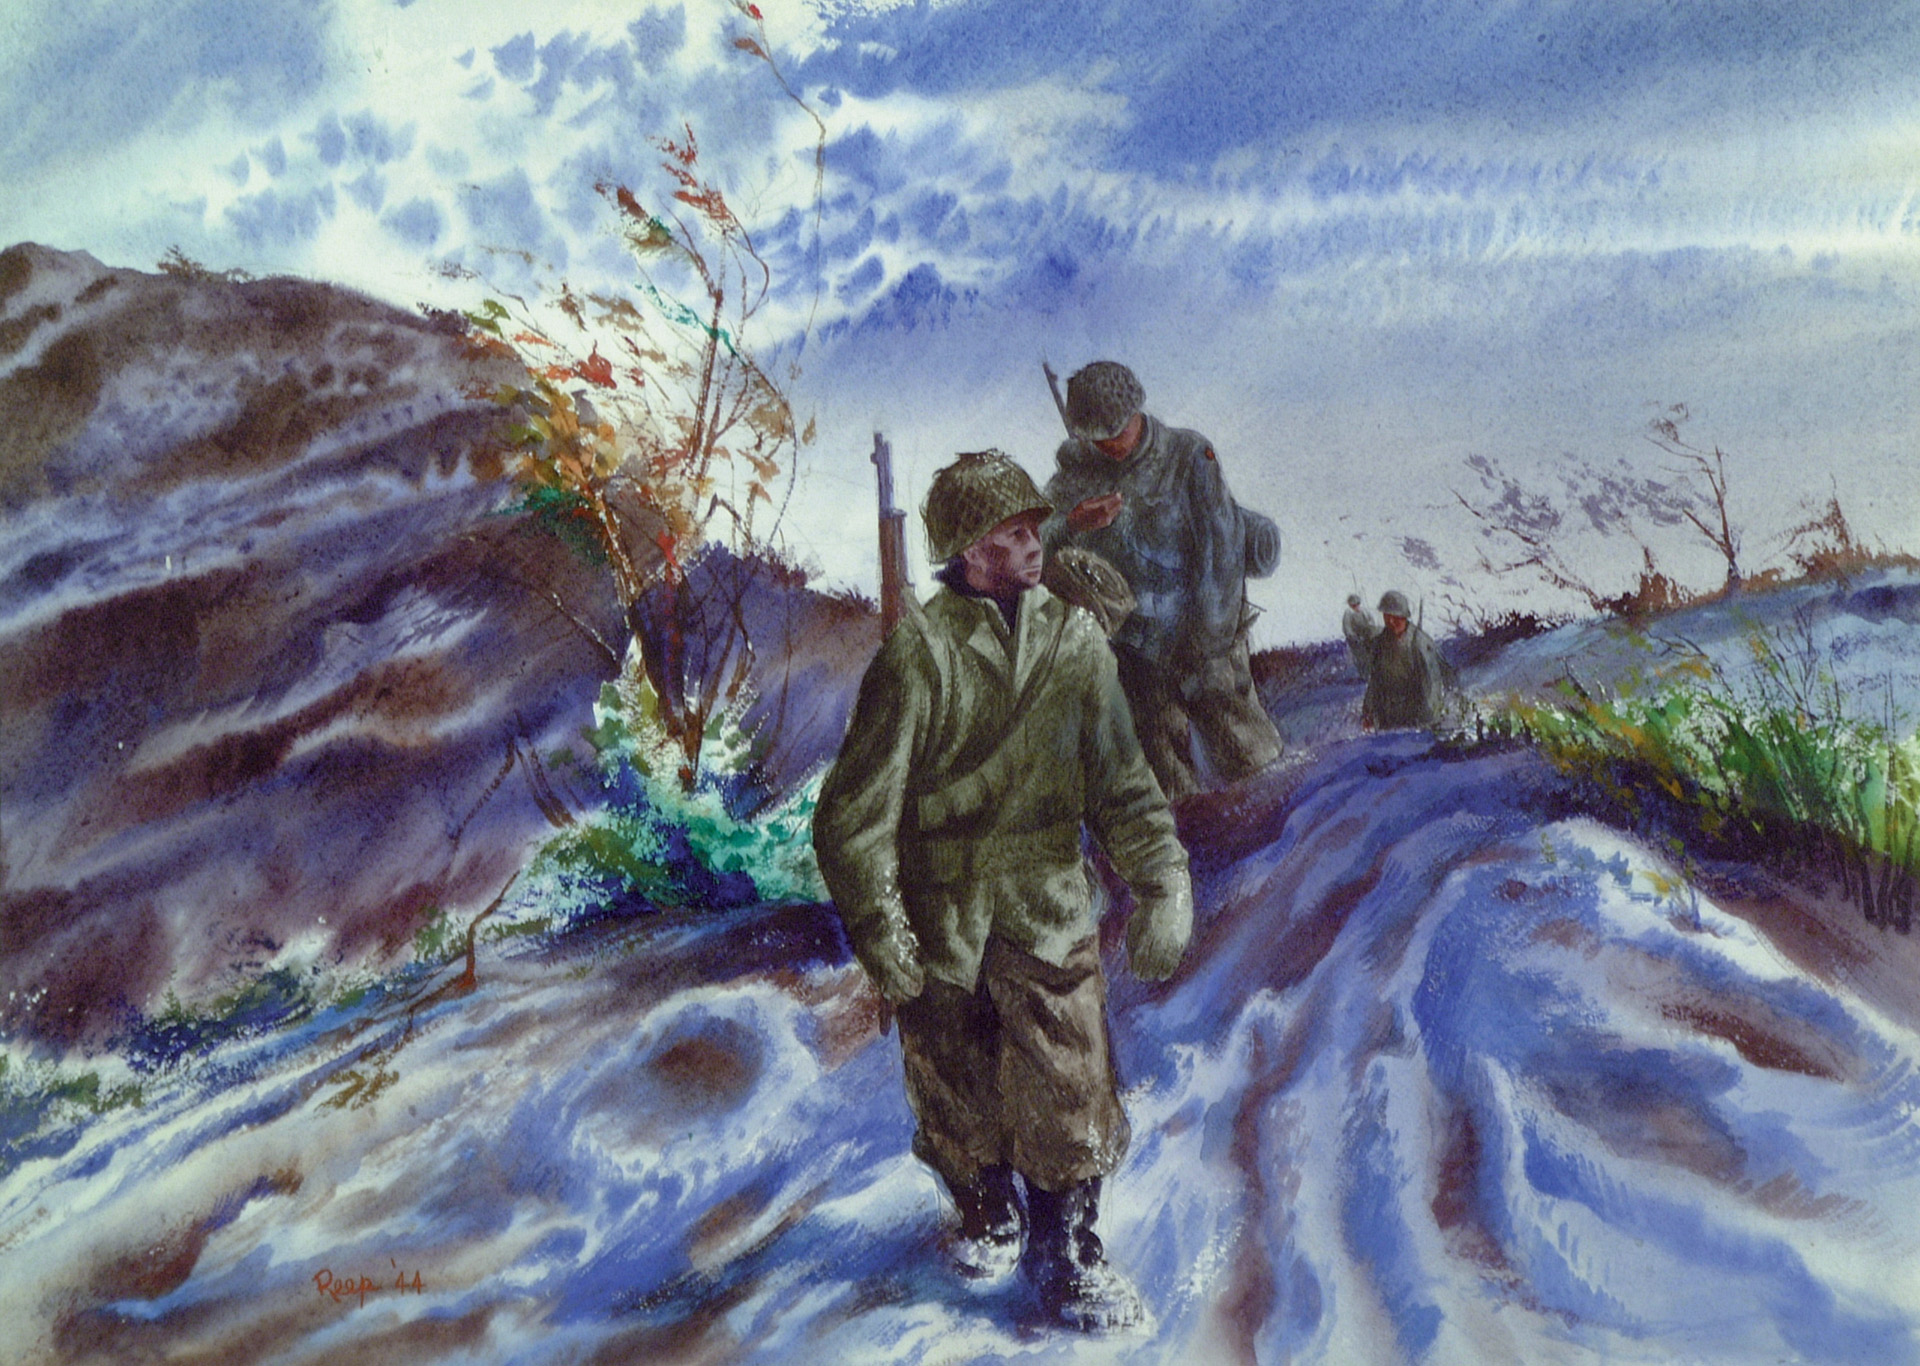 Wearing winter gear, American soldiers press forward along a snowy Italian roadway. 